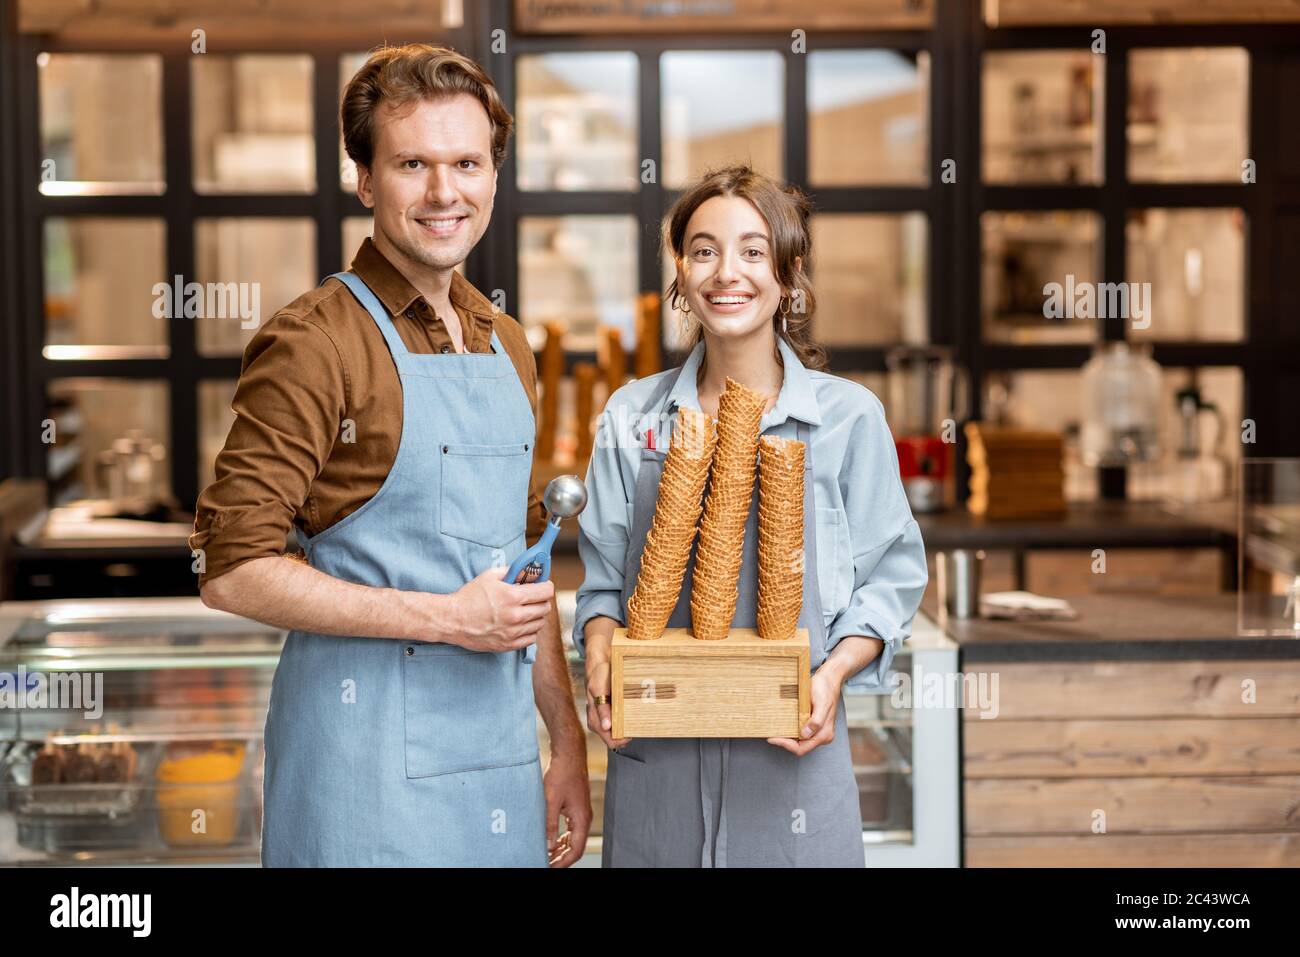 Porträt von zwei fröhlichen Mitarbeitern eines Cafés oder einer kleinen Konditorei, die mit einem Eiszapfen vor der Theke im Inneren stehen Stockfoto